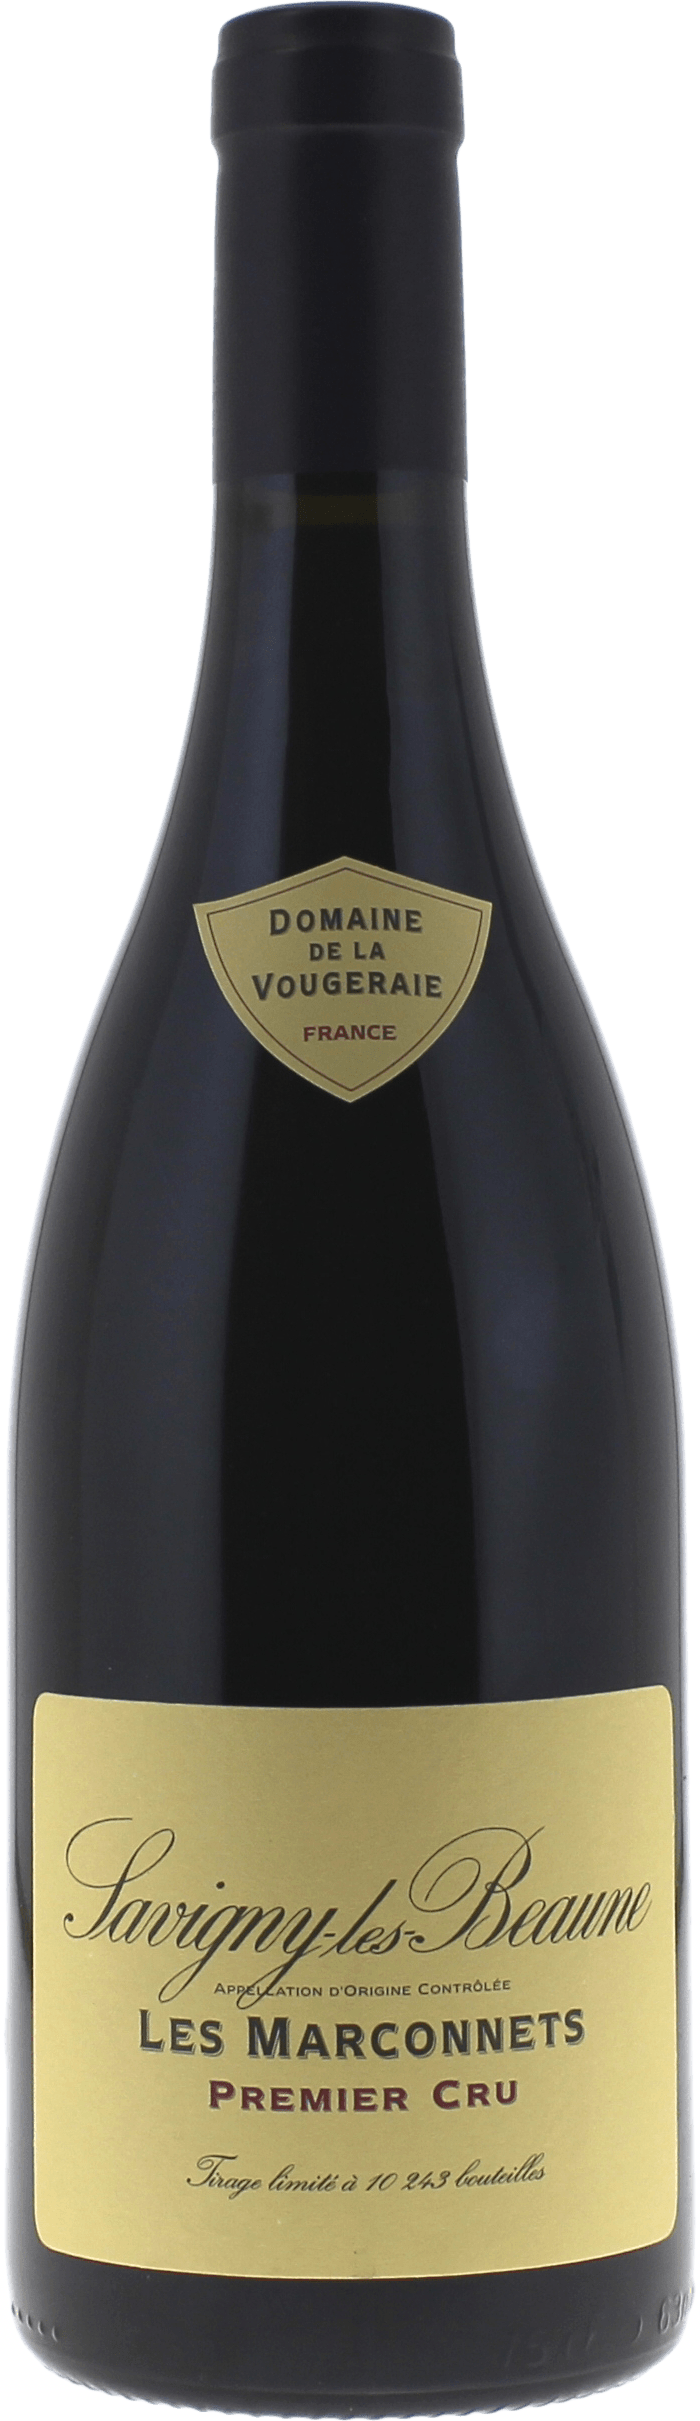 Savigny les beaune les marconnets 1er cru 2018 Domaine VOUGERAIE, Bourgogne rouge